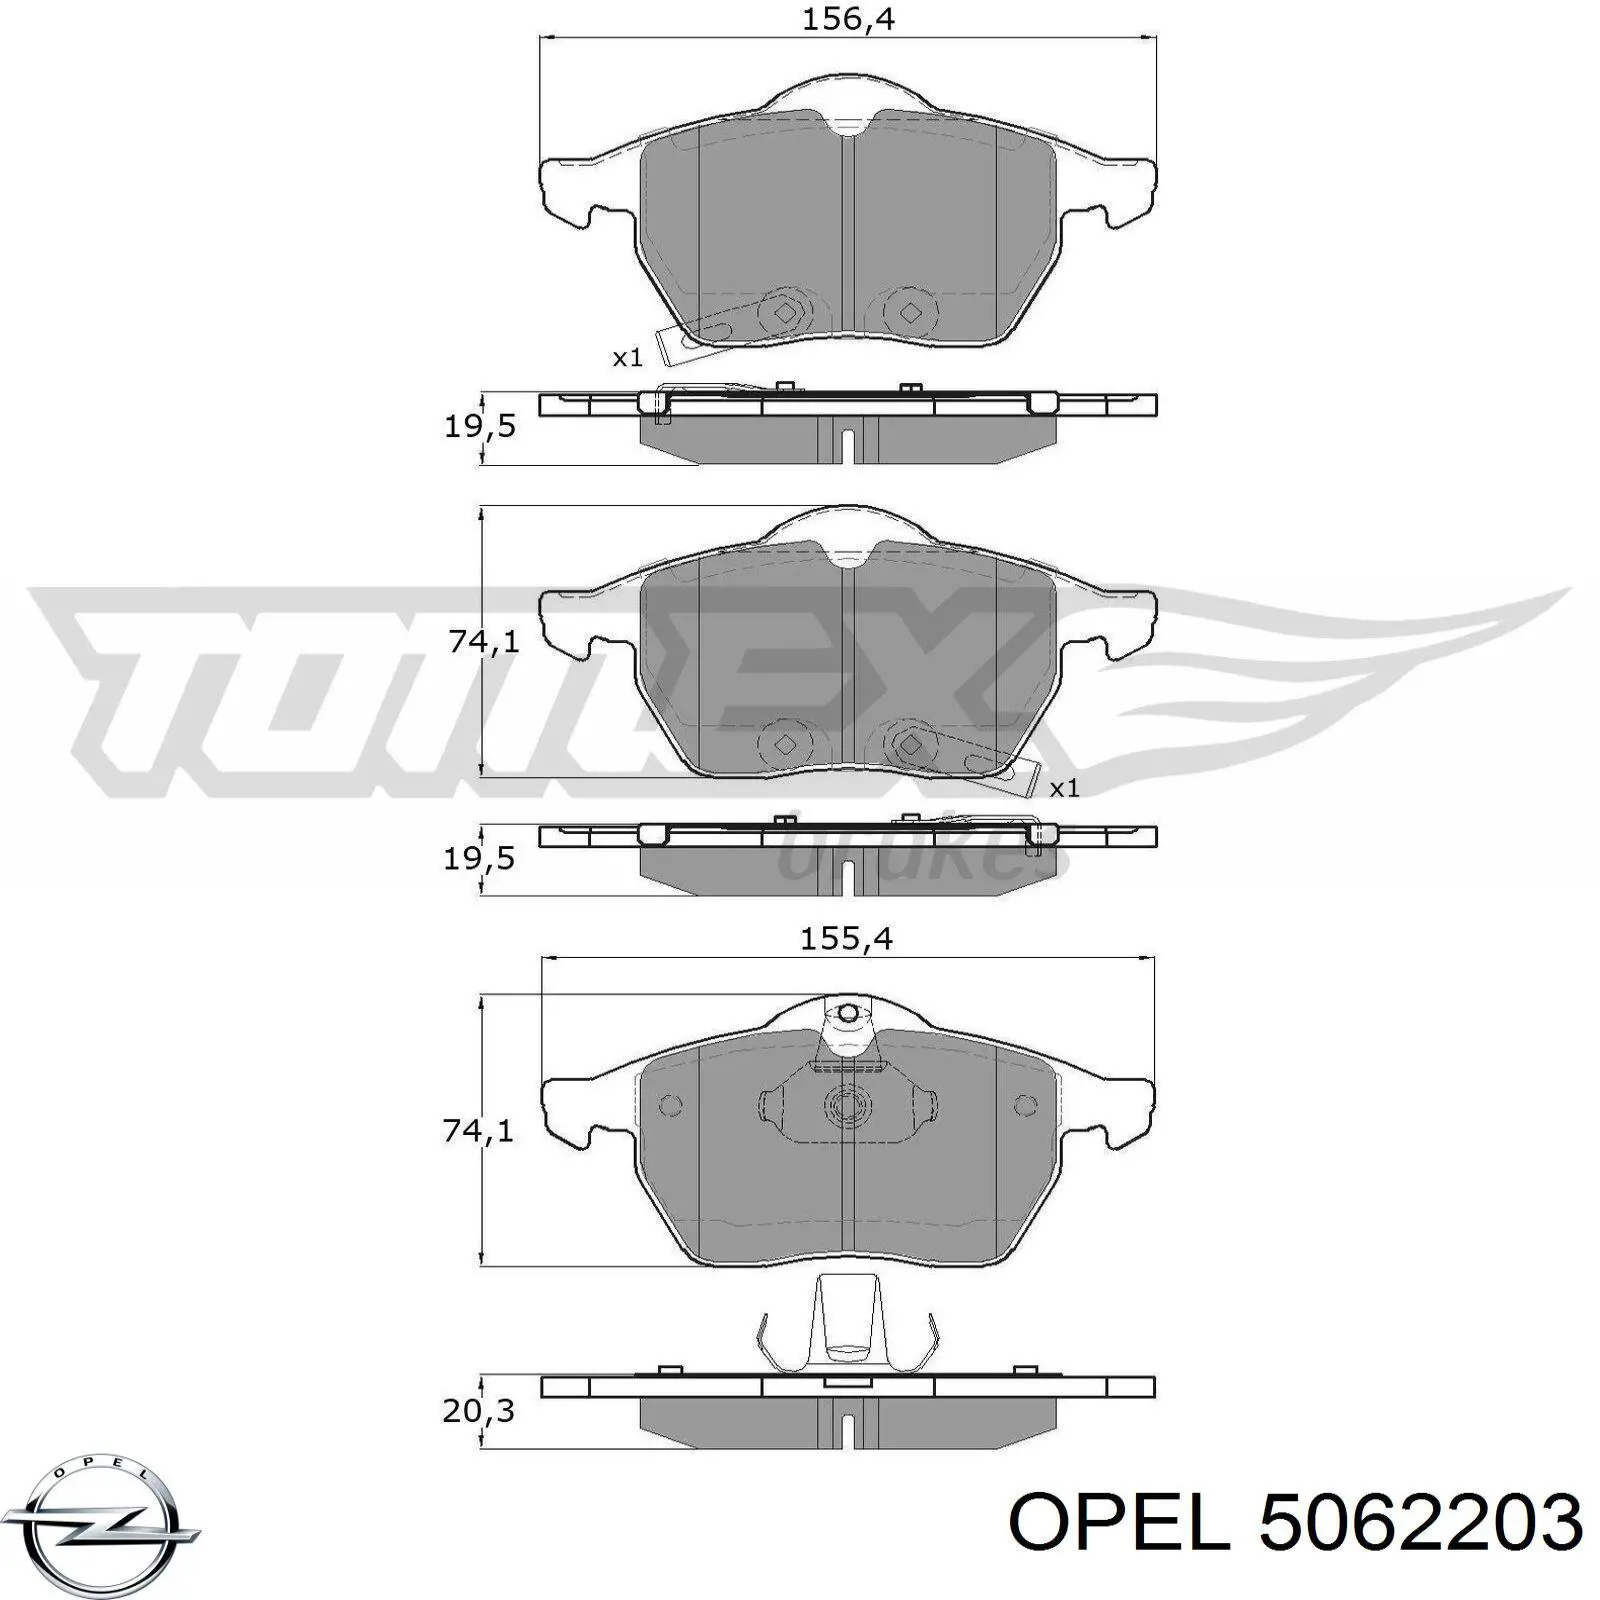 5062203 Opel pastillas de freno delanteras